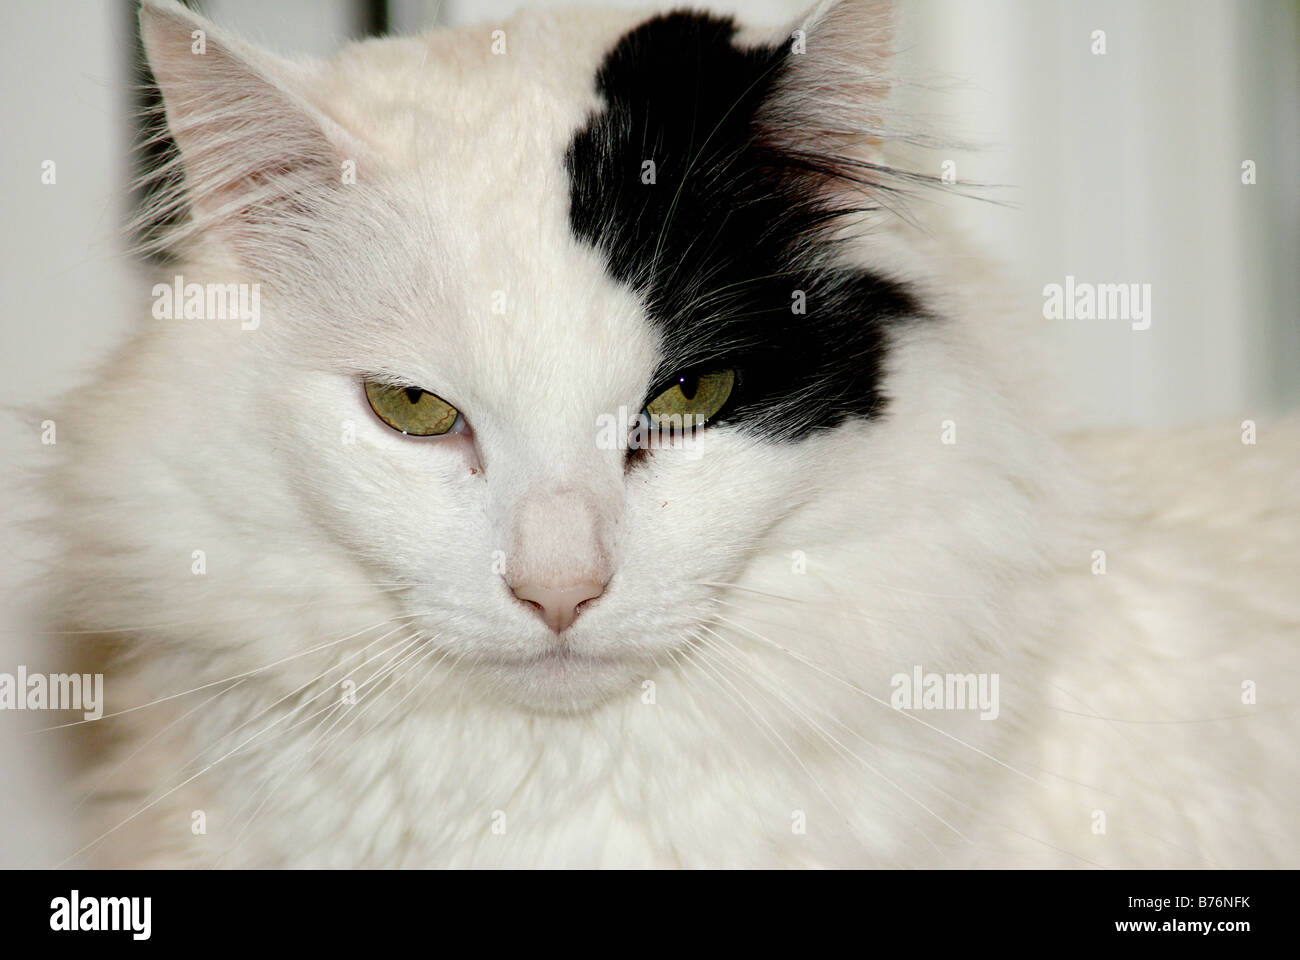 Ritratto di gatto closeup di dai lunghi capelli gatto bianco con unusaul contrassegno nero attorno ad un occhio ed orecchio Foto Stock